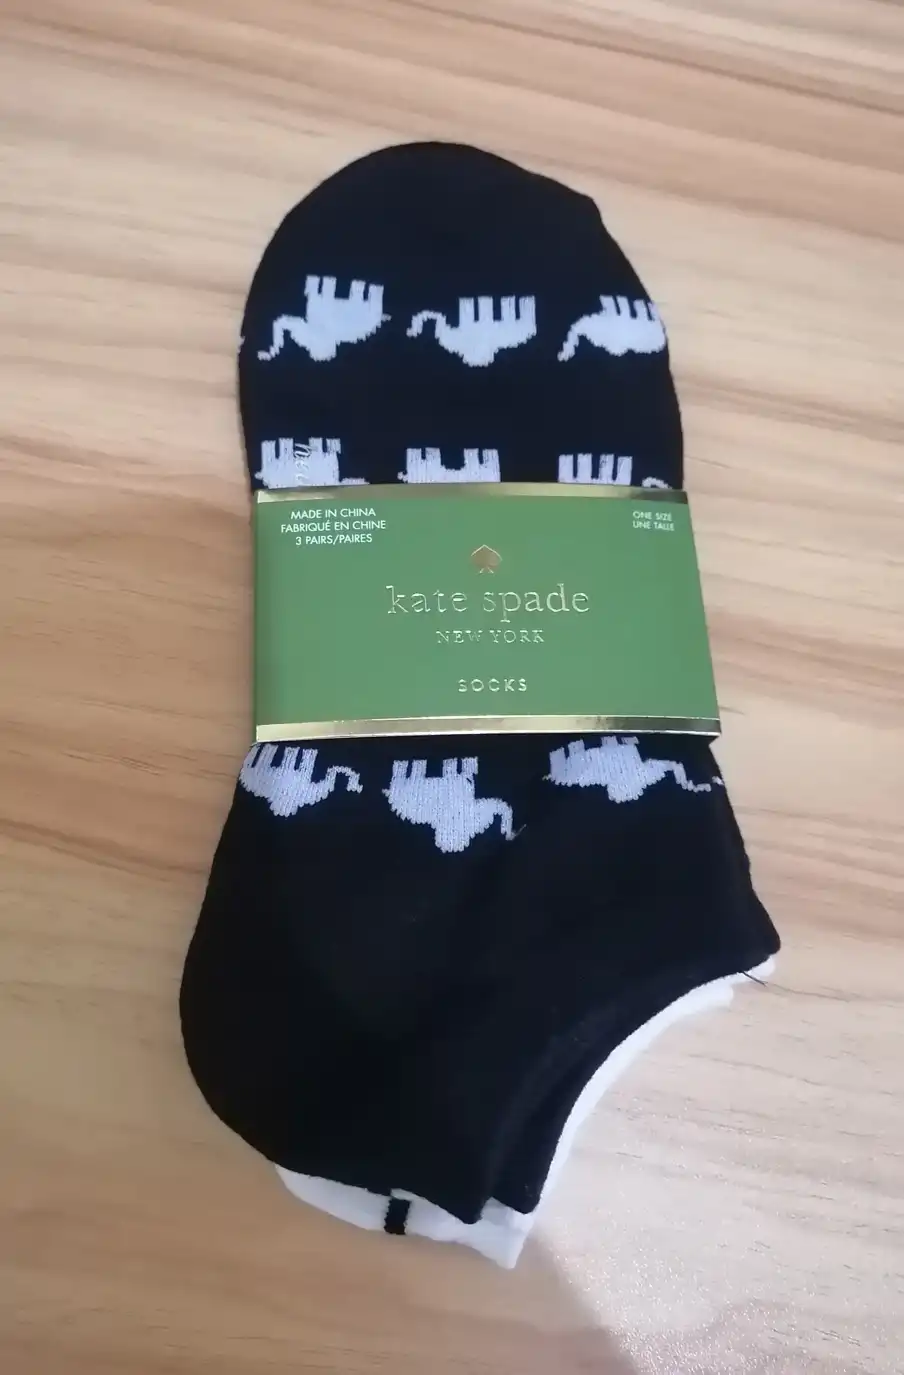  Kate Spade Socks